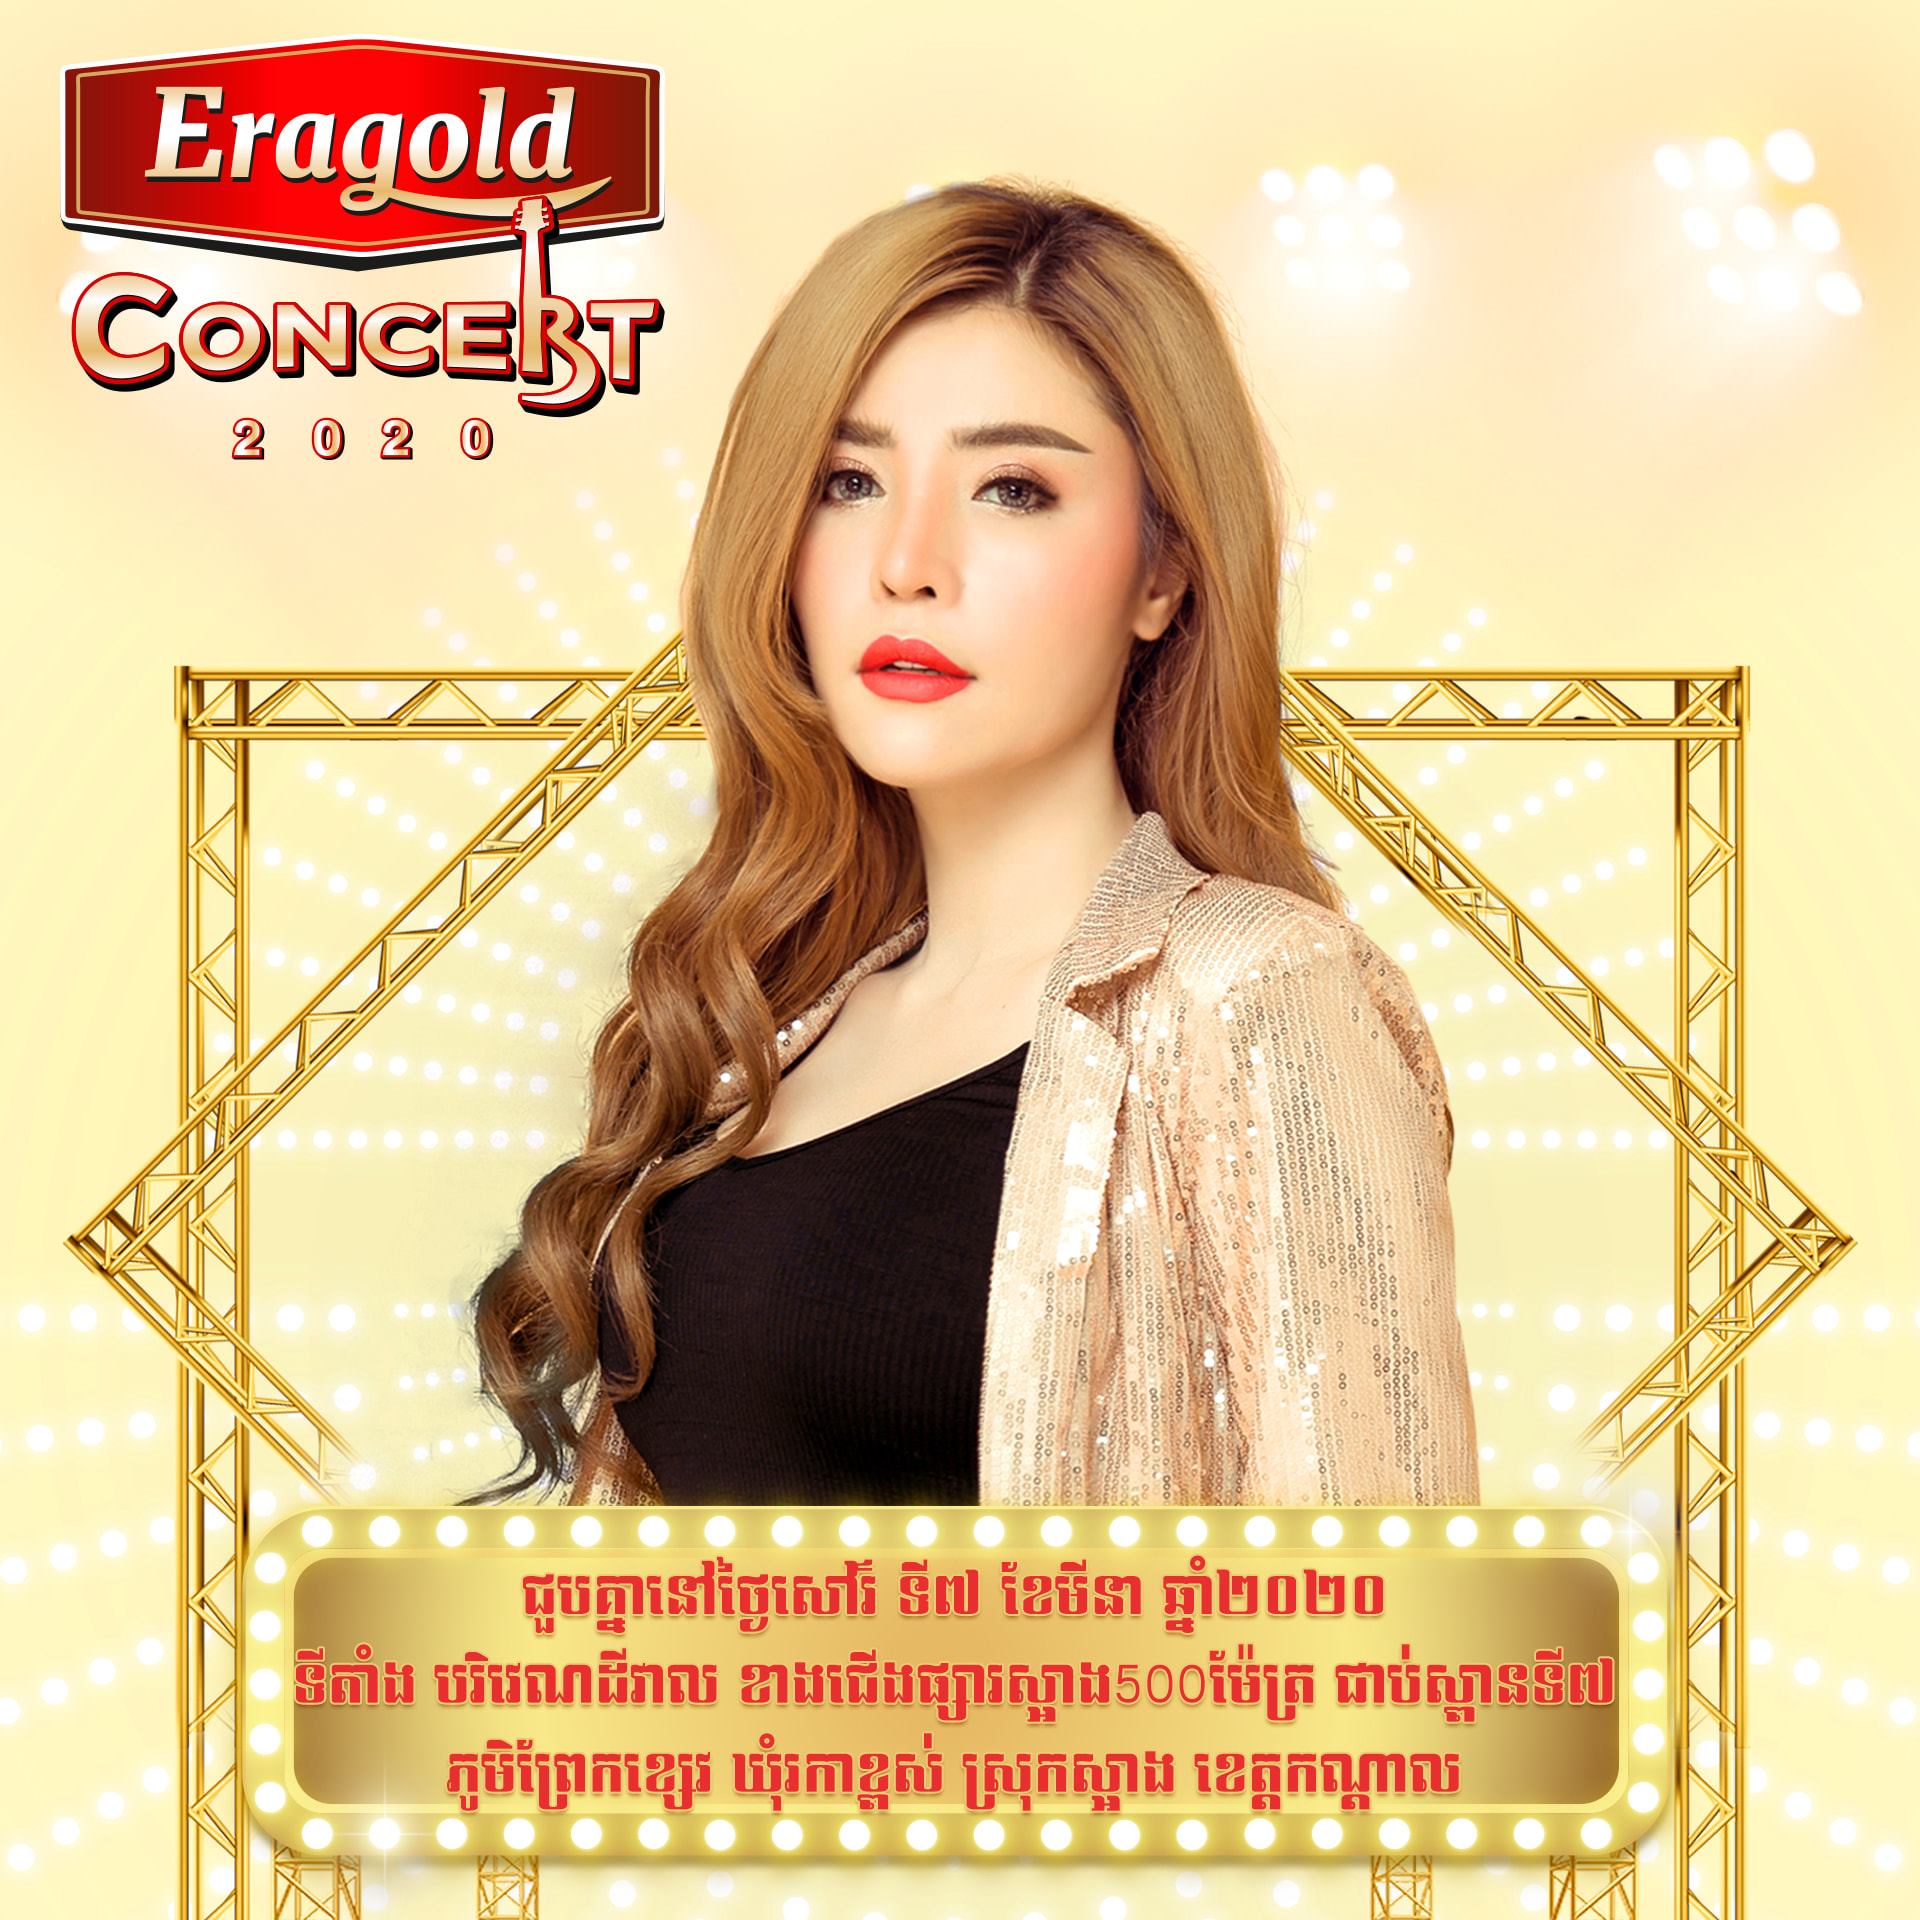 ព្រឹត្តិការណ៍ប្រគំតន្ត្រីទេសចរណ៍ដ៏ធំប្រចាំឆ្នាំ Eragold Concert 2020